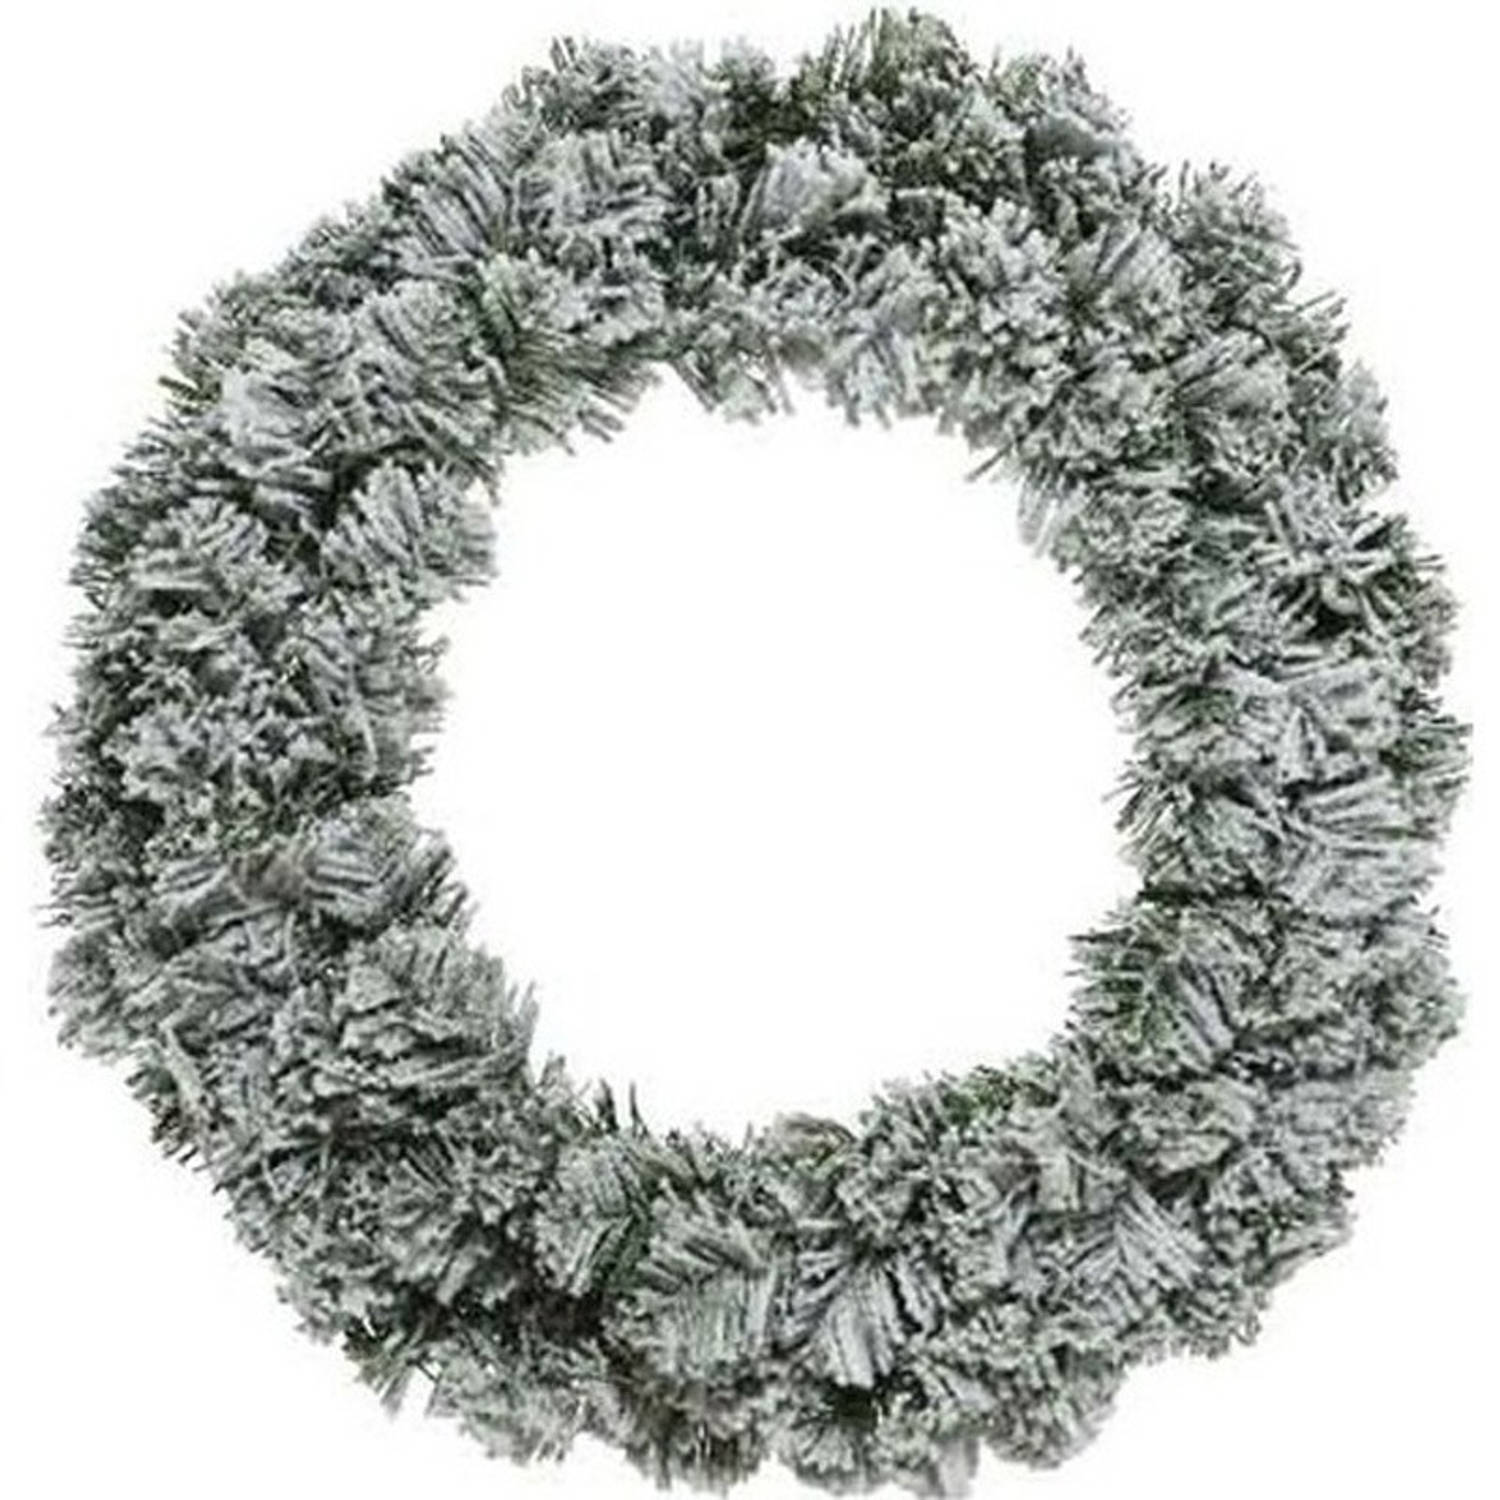 Kerst krans groen met sneeuw 60 cm dennenkransen versiering/decoratie - Kerstkransen